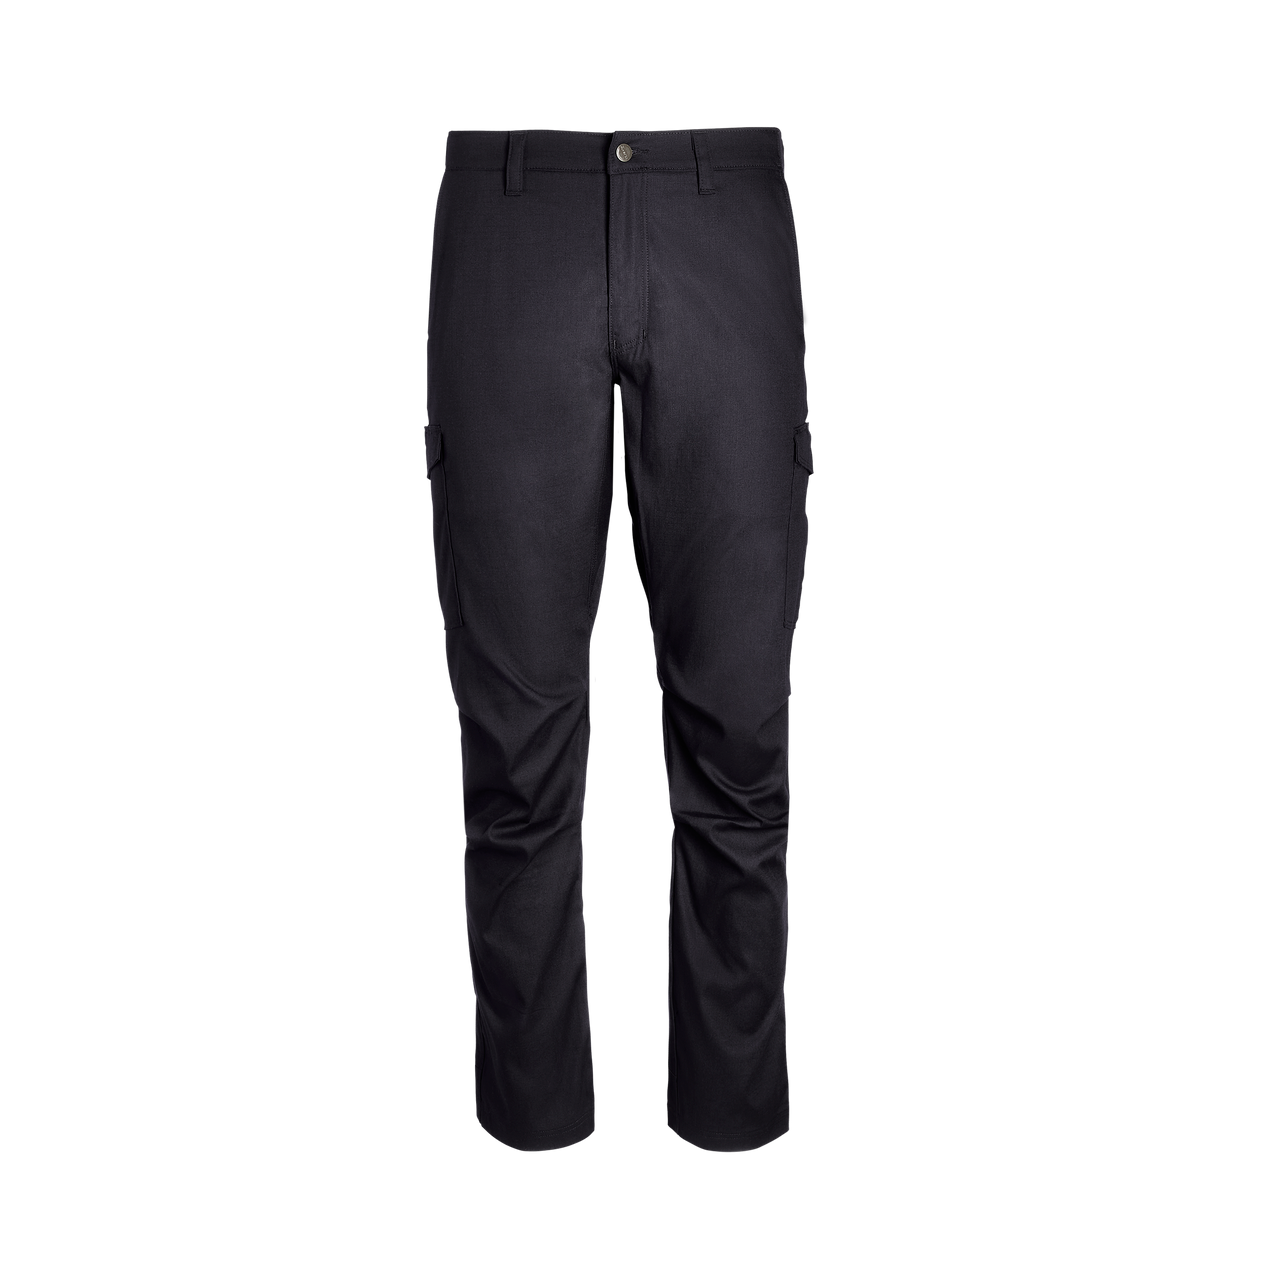 Vertx Mens Cargo Pants, Black, 33 x 30 in. VTX8600LBK